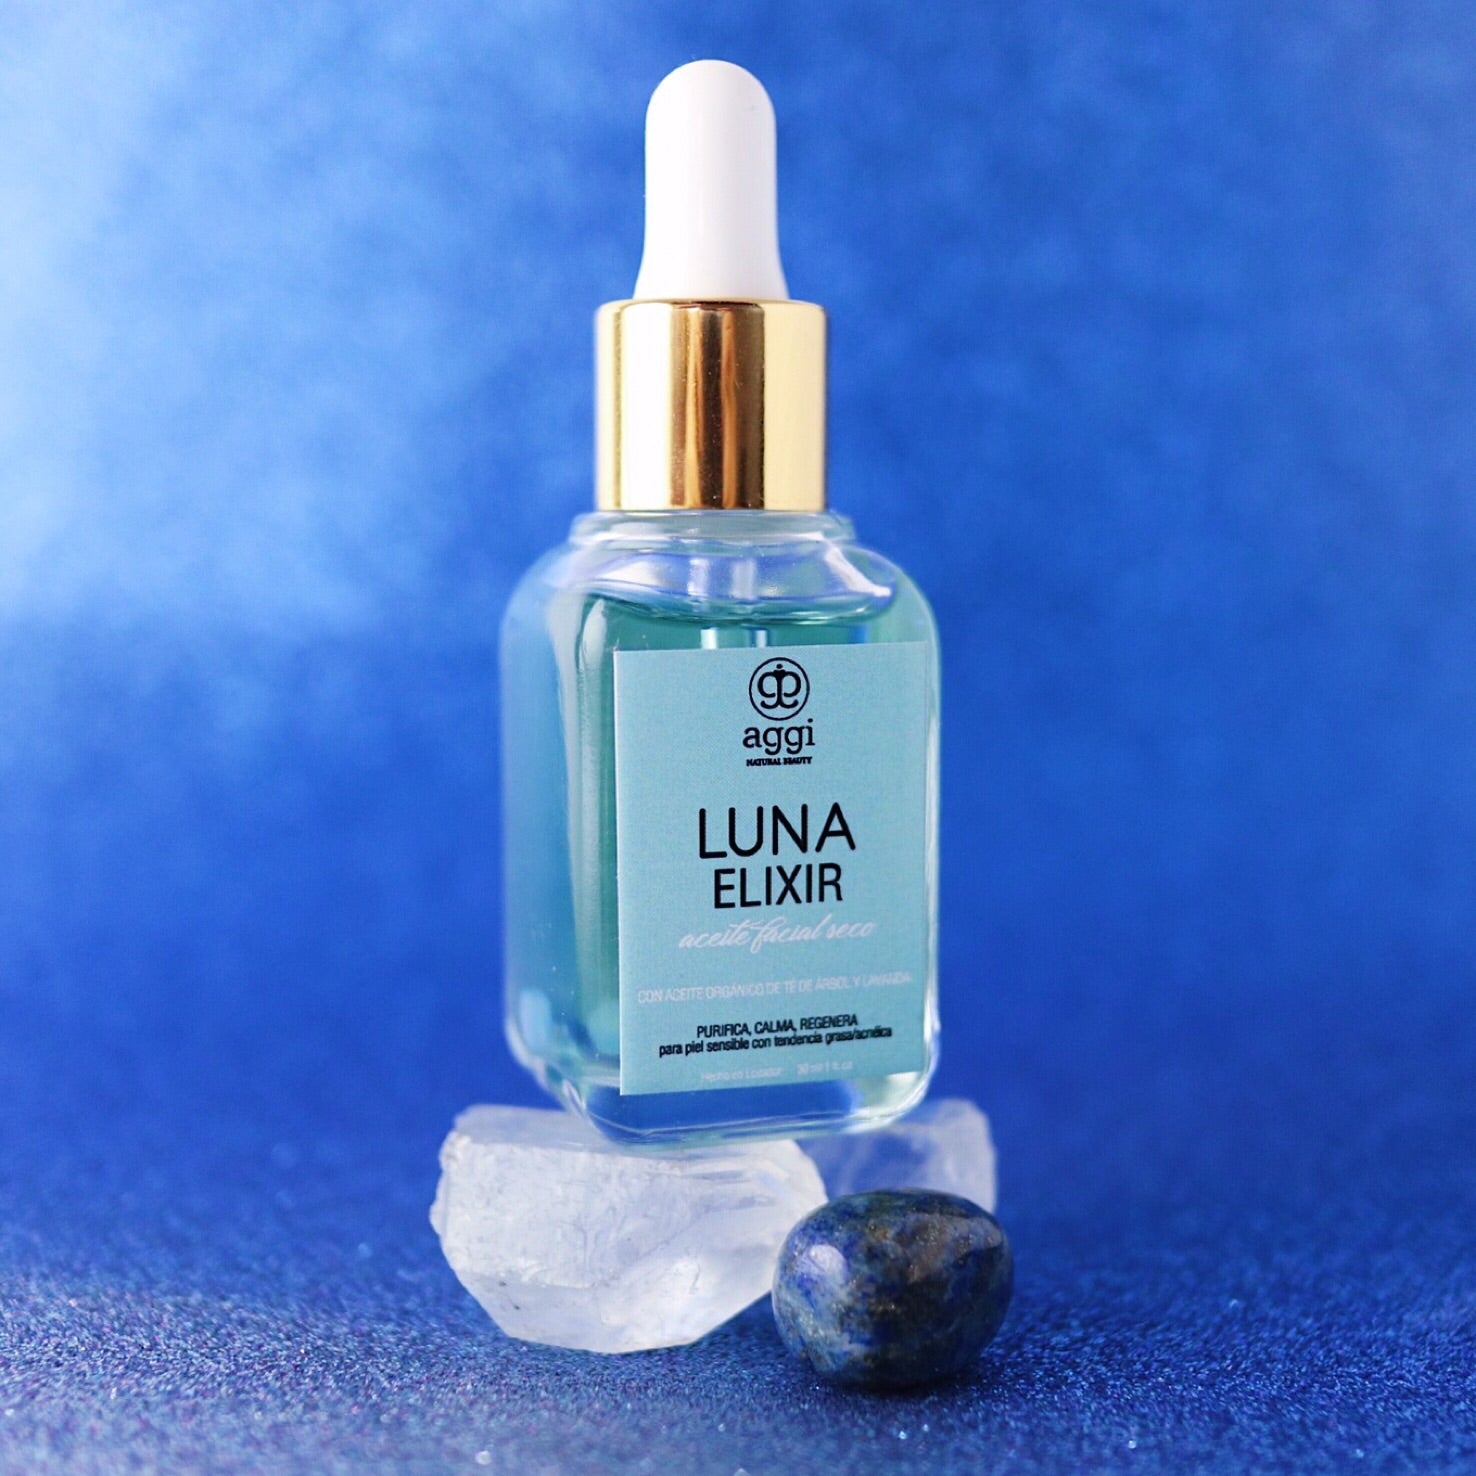 Luna Elixir Facial Oil